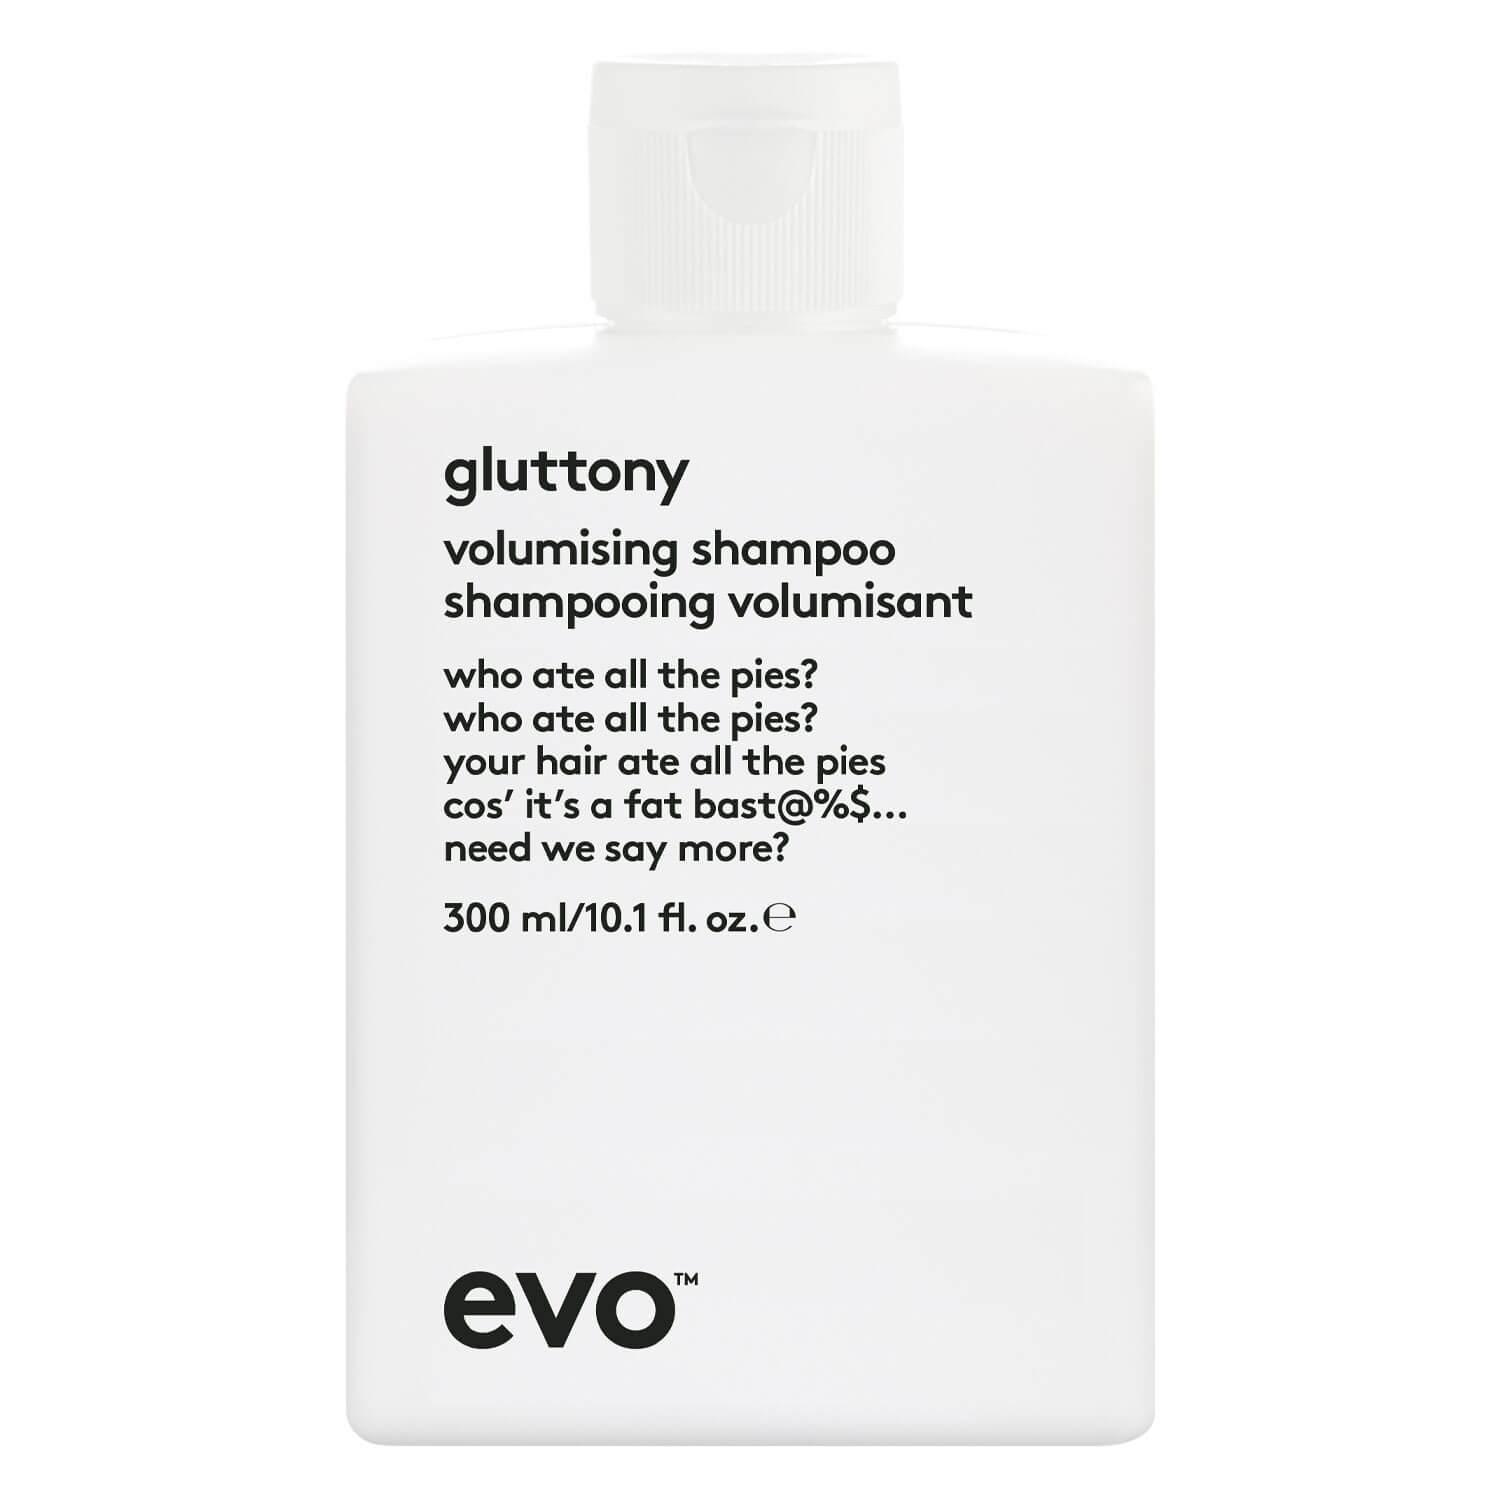 evo volume - gluttony volumising shampoo